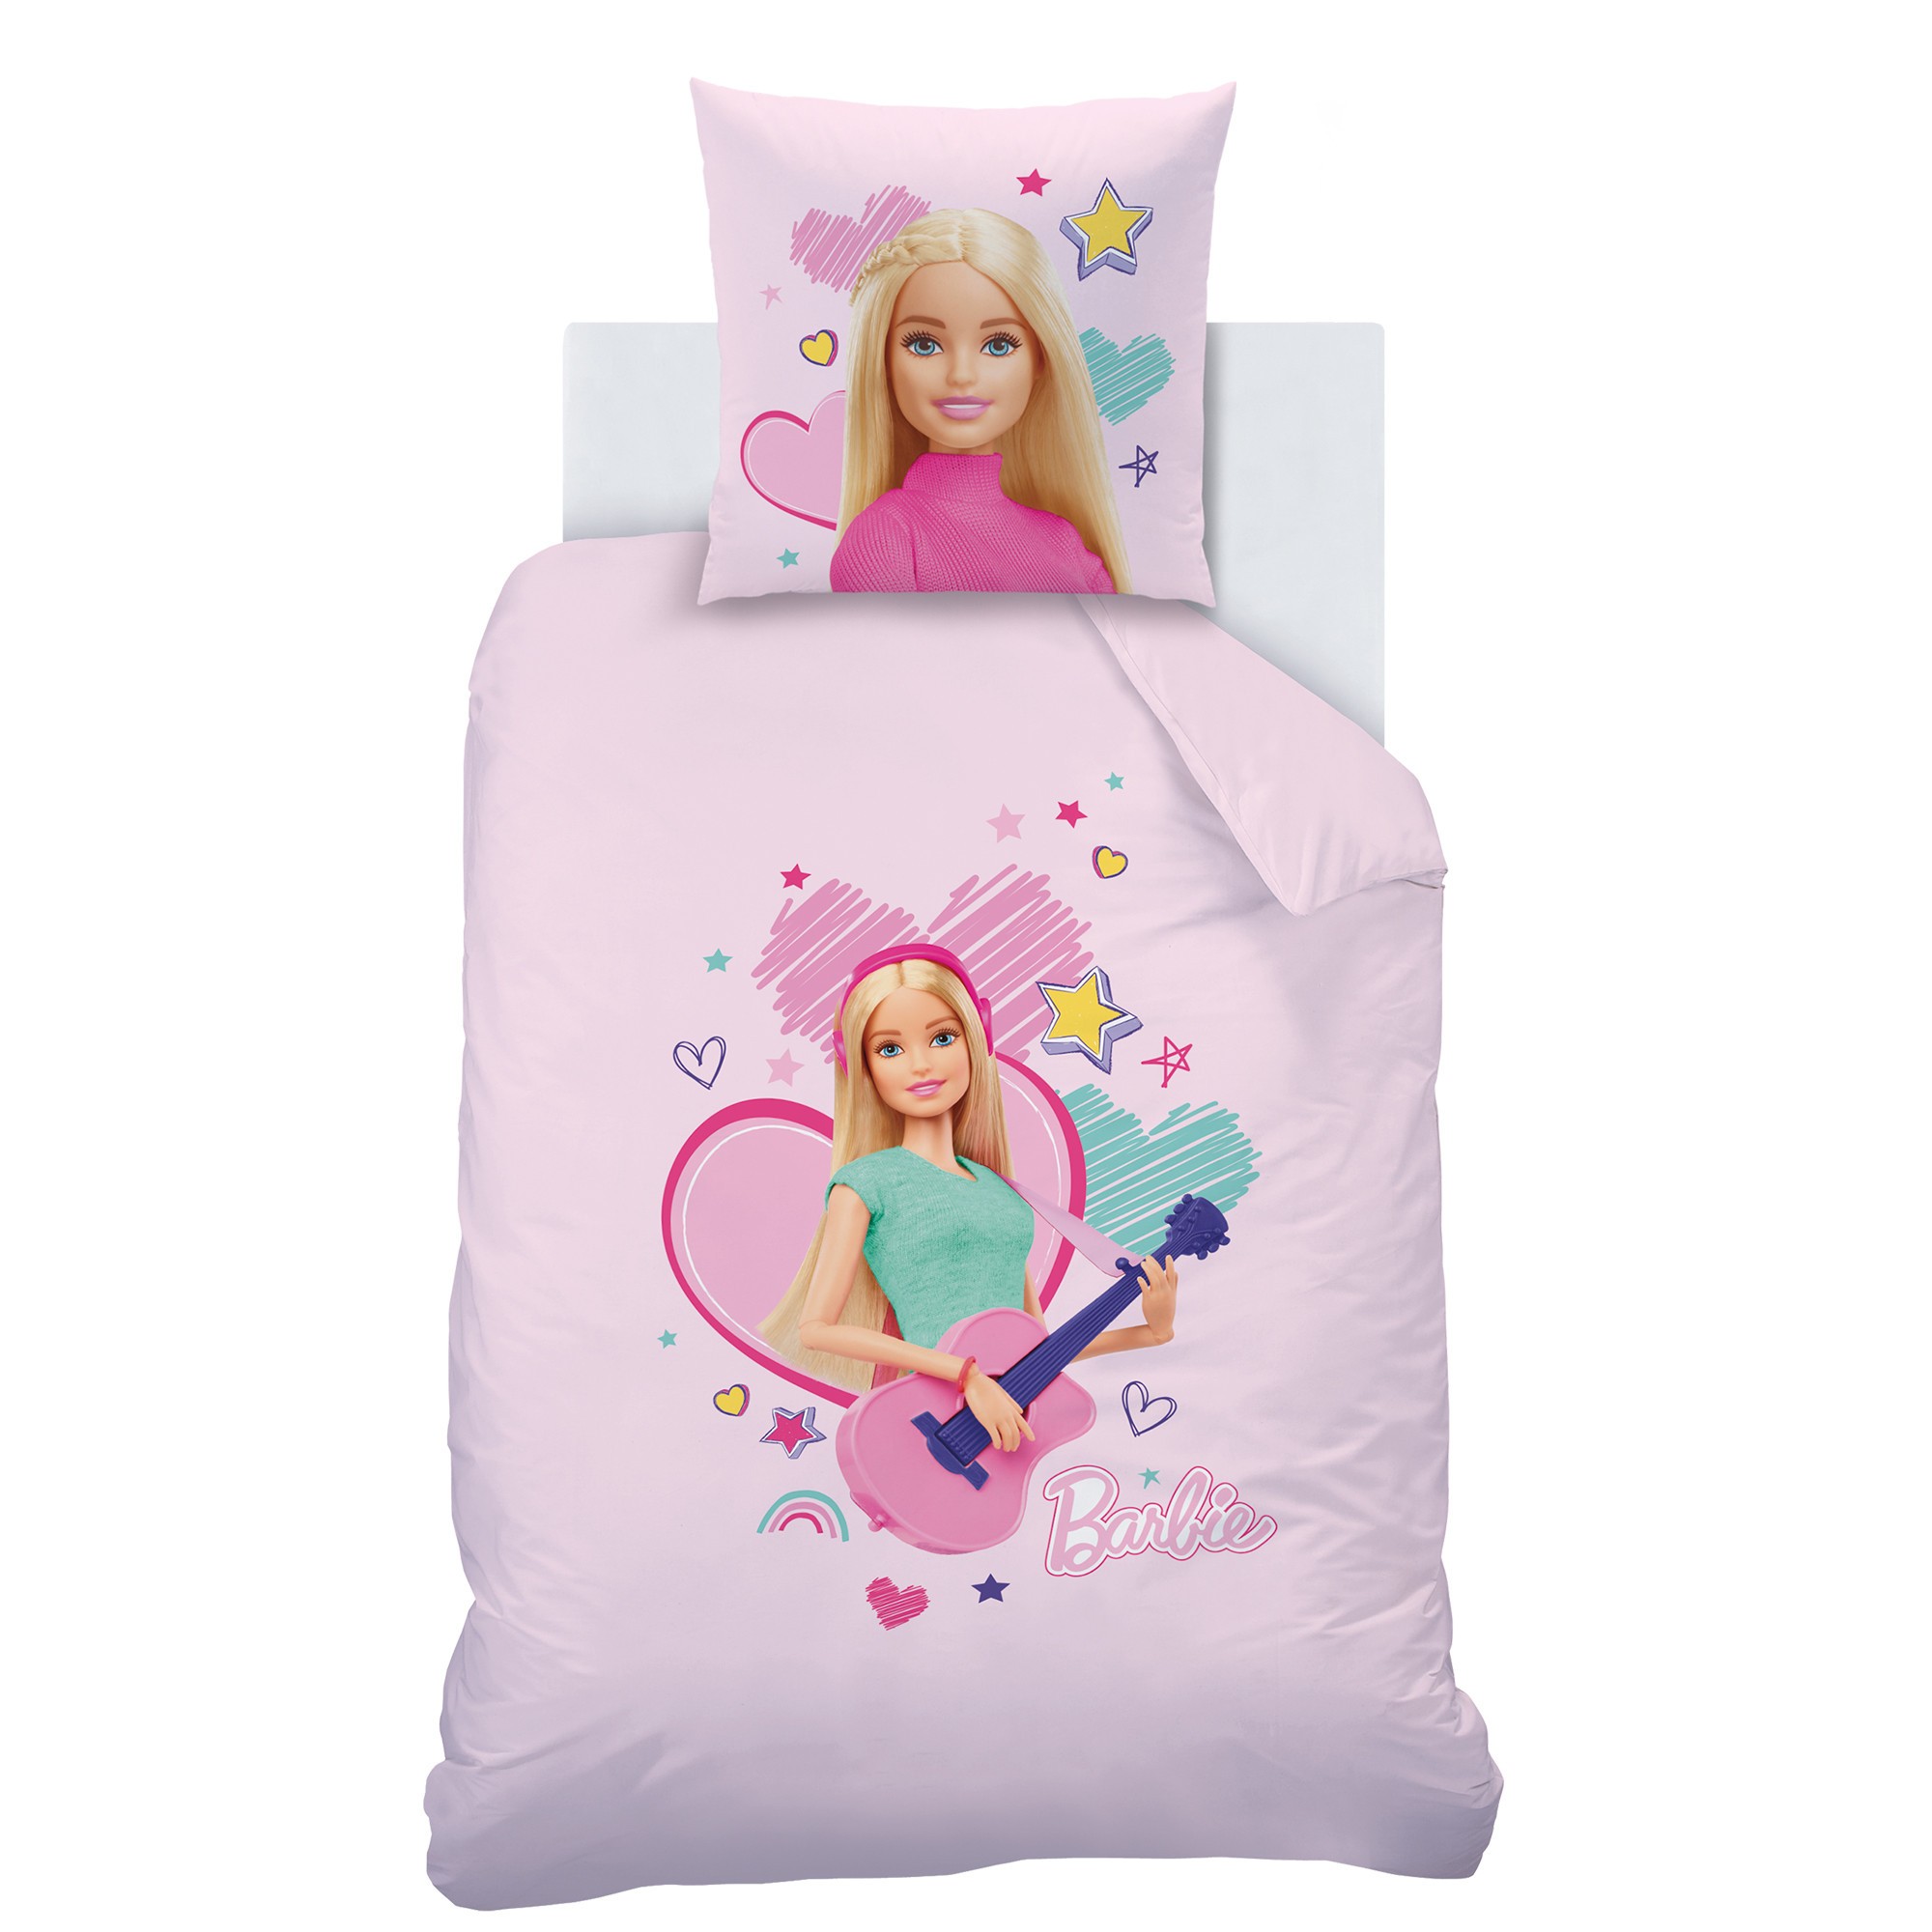 Parure de lit en coton rose Barbie pour lit de 1 personne